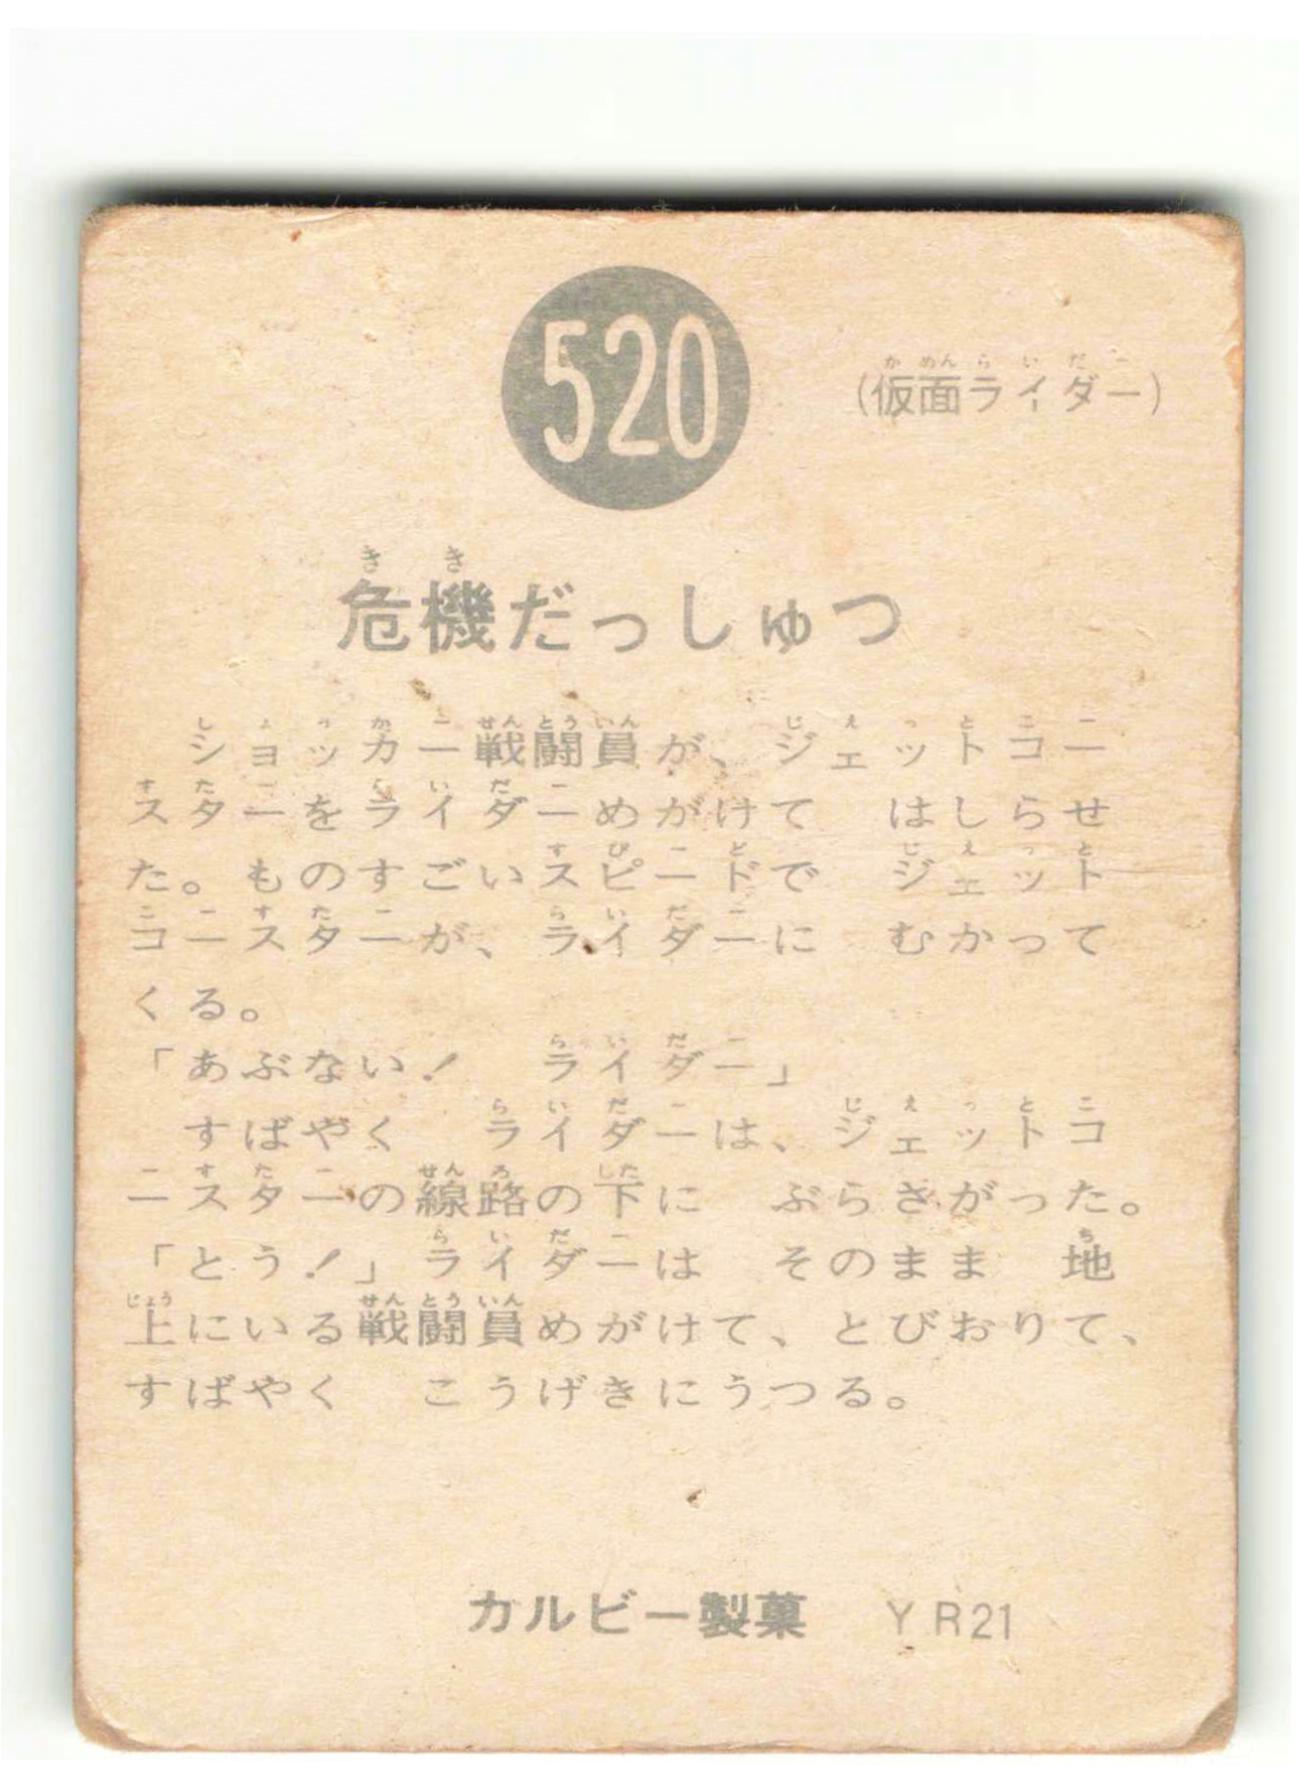 カルビー製菓 【旧仮面ライダーカード】 YR21版 危機だっしゅつ 520